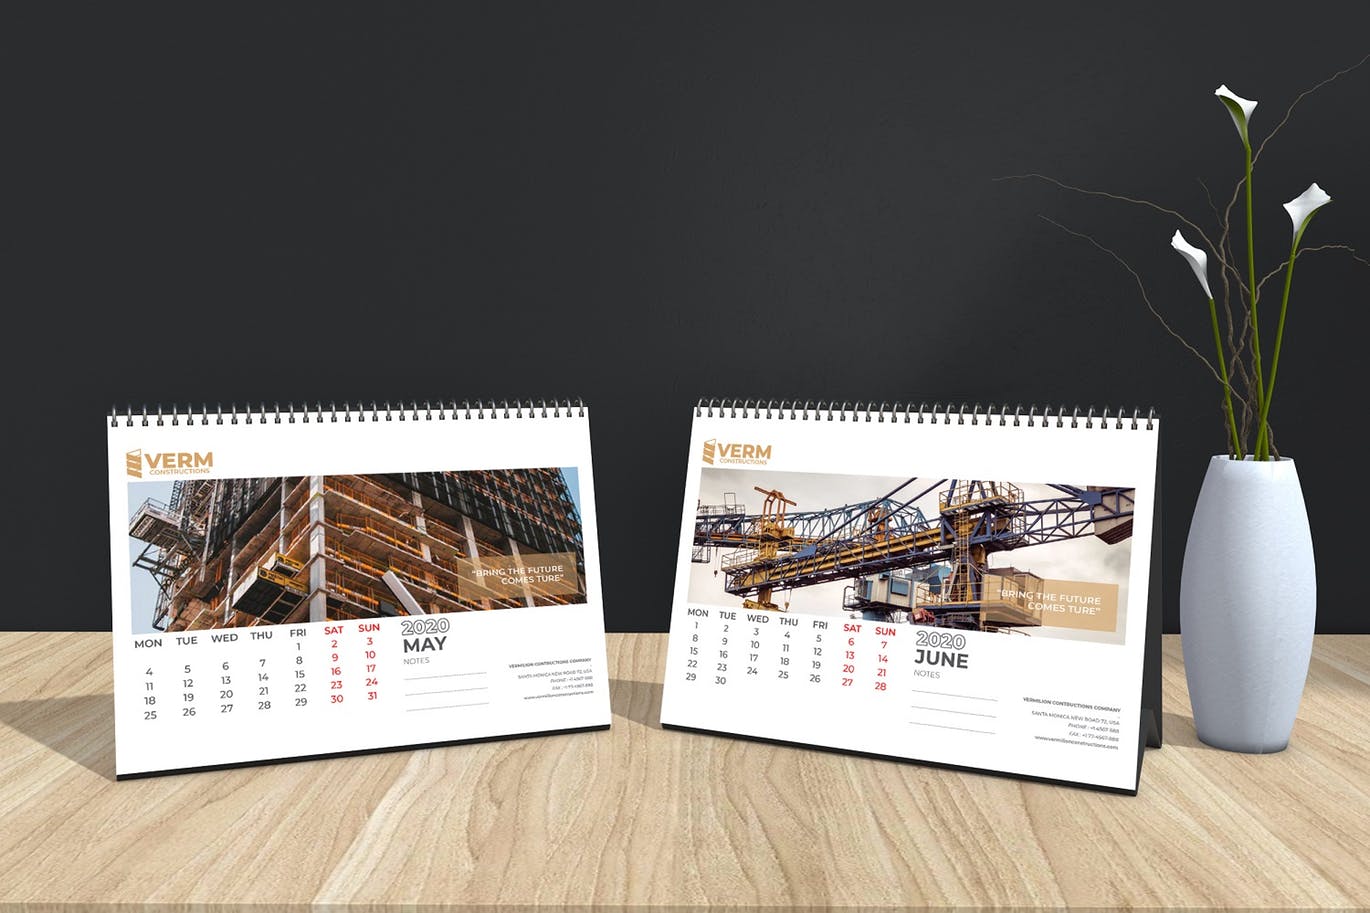 2020年建筑主题台历&挂墙日历表设计模板 Construction Wall & Table Calendar 2020插图(11)